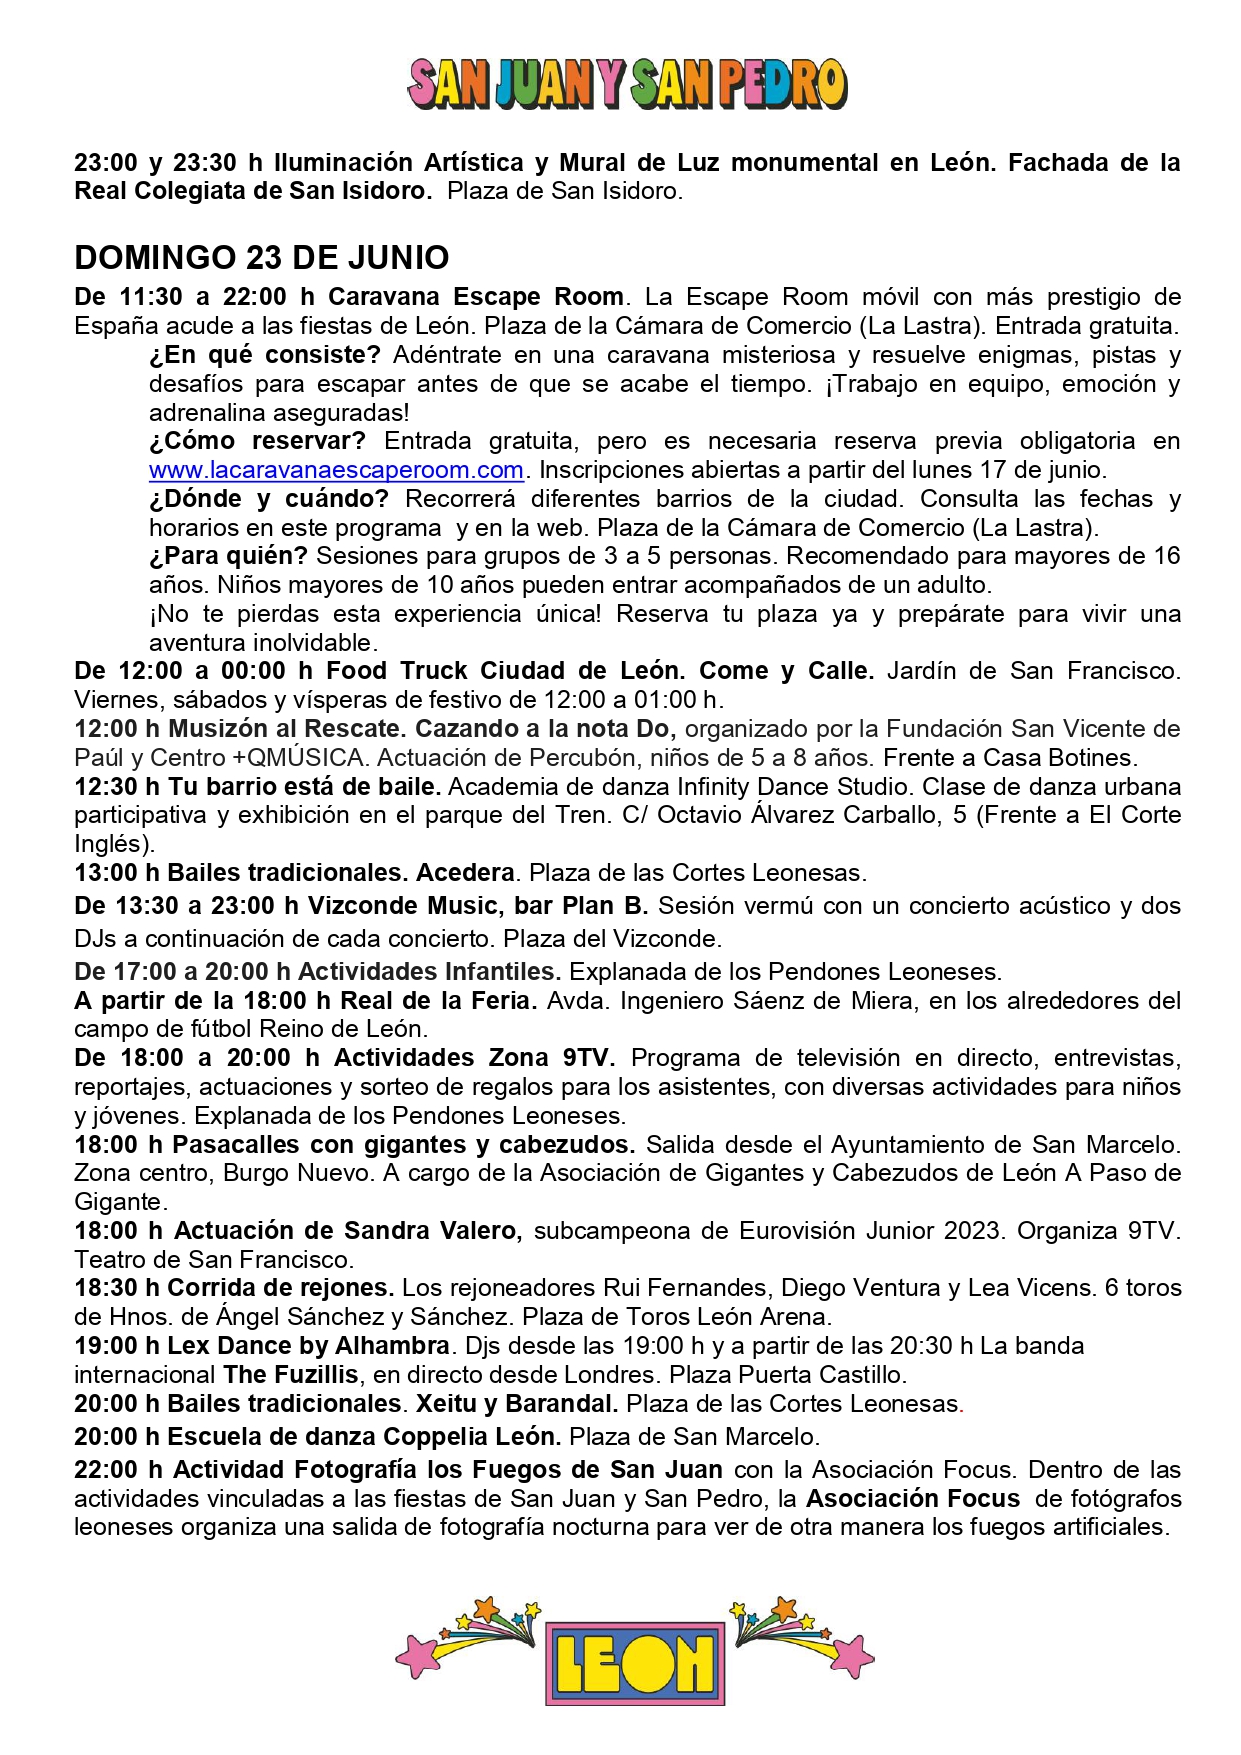 Programa de Fiestas San Juan y San Pedro en León, conciertos, deportes y todas las actividades 9